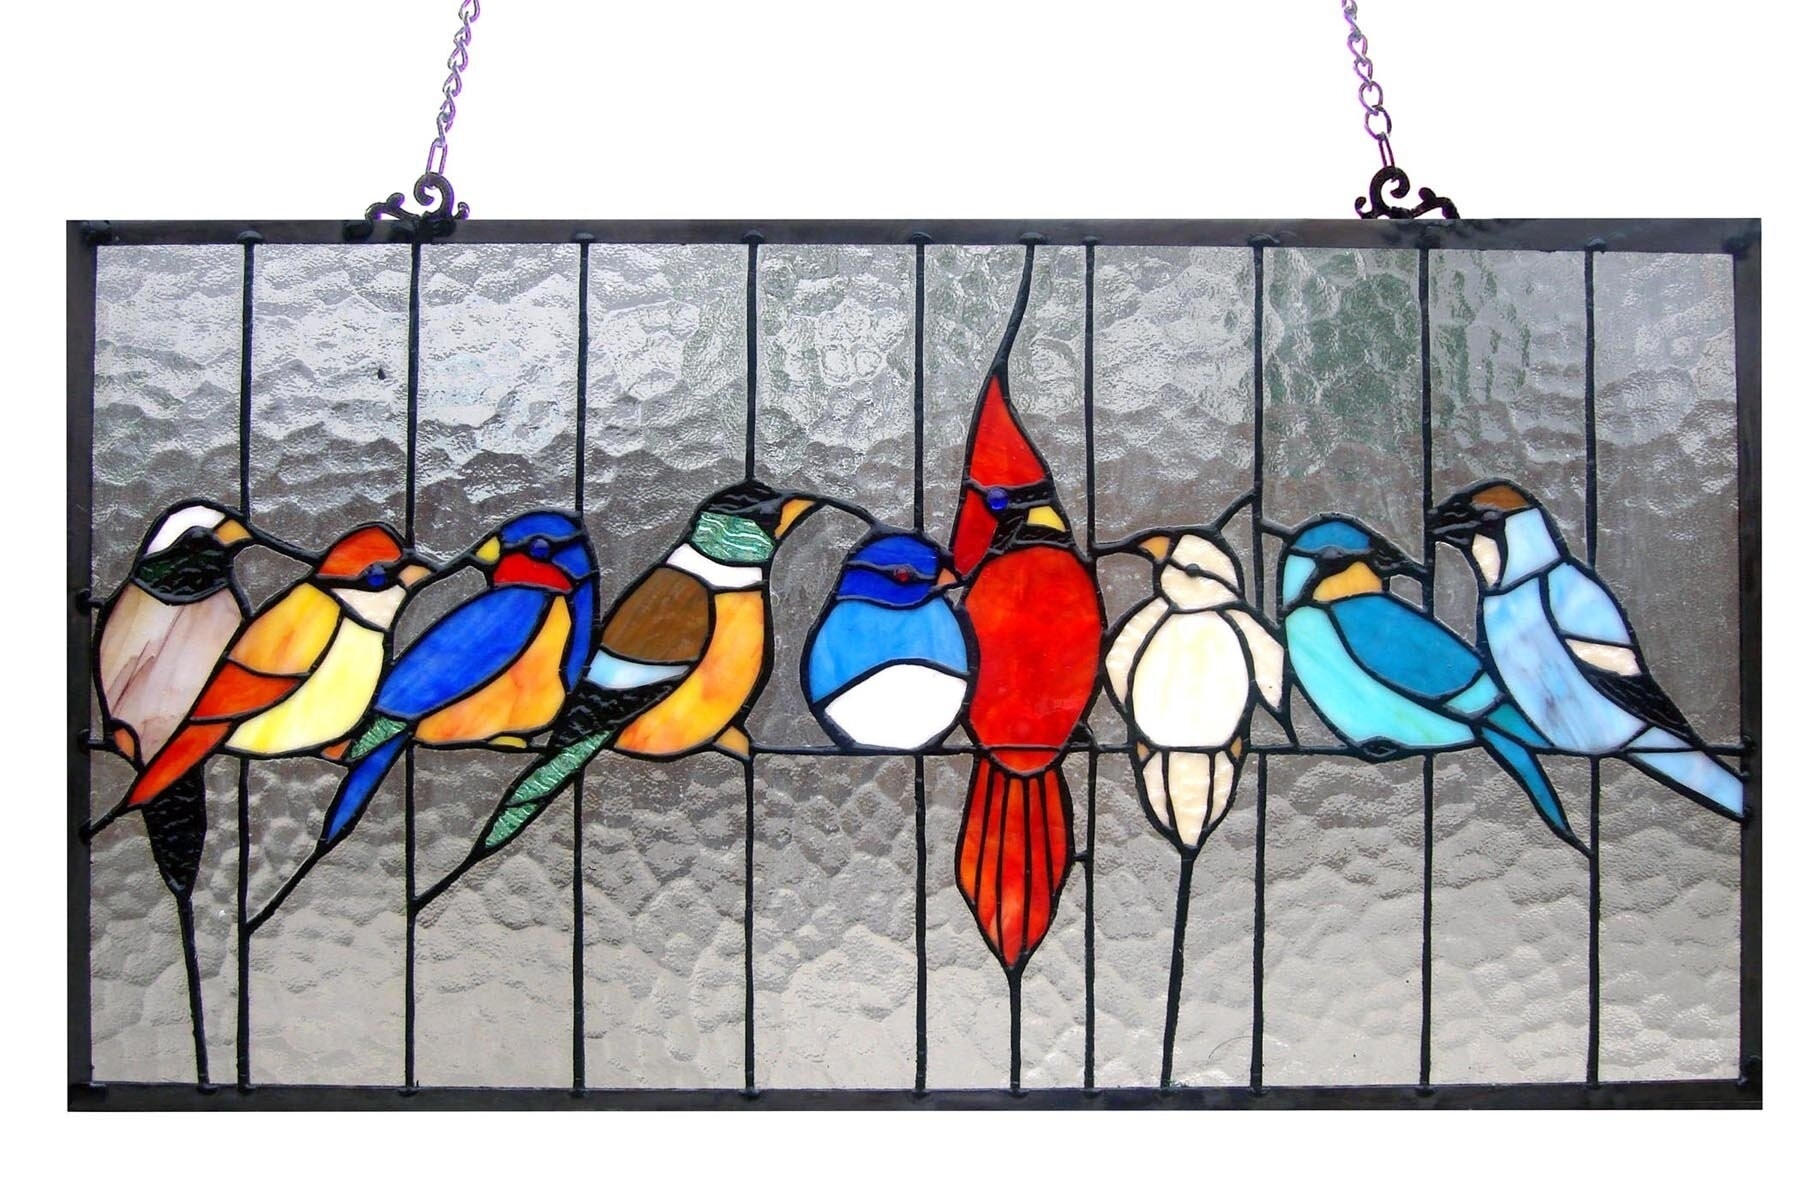 Glass Bird, Blown Glass Bird, Home Decoration, Glass Bird Art, Handmade,  Stained Glass Bird, Christmas Gift -  Canada